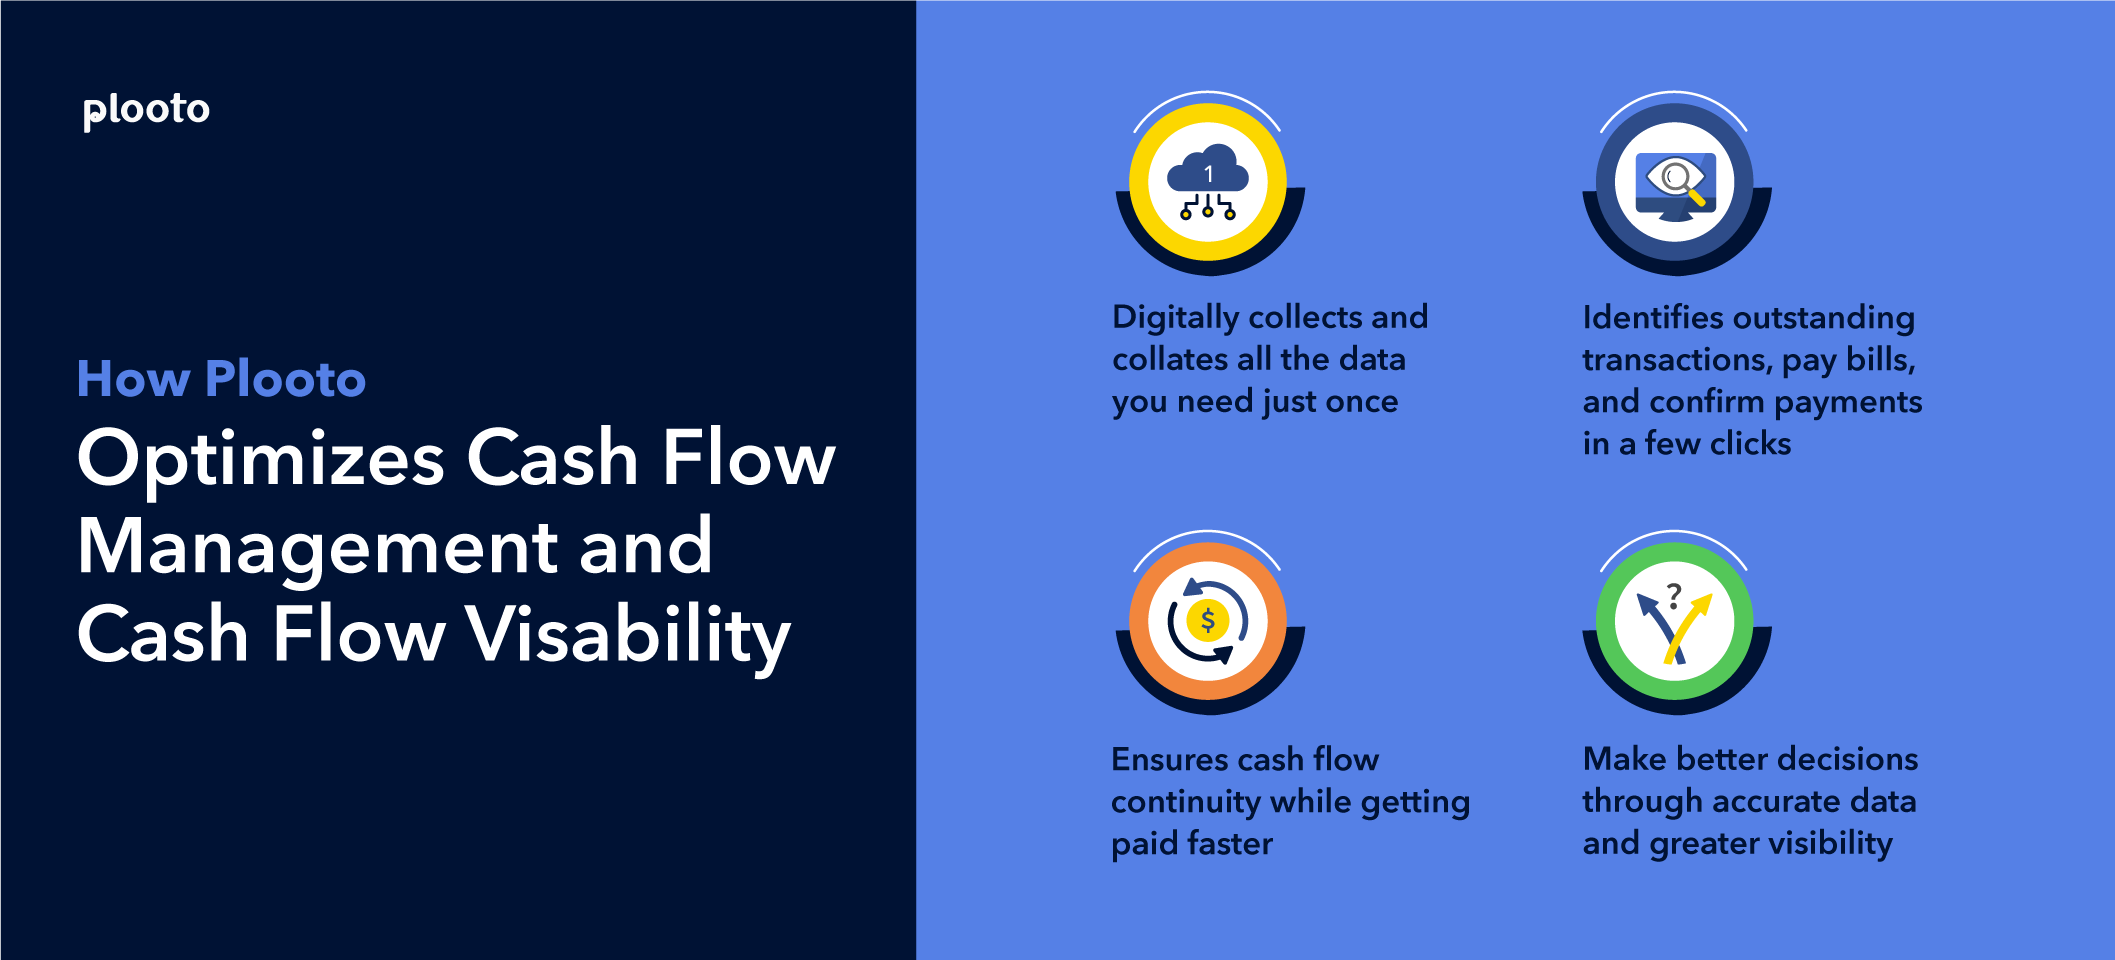 How-Plooto-optimizes-cash-flow-management-and-cash-flow-visibility